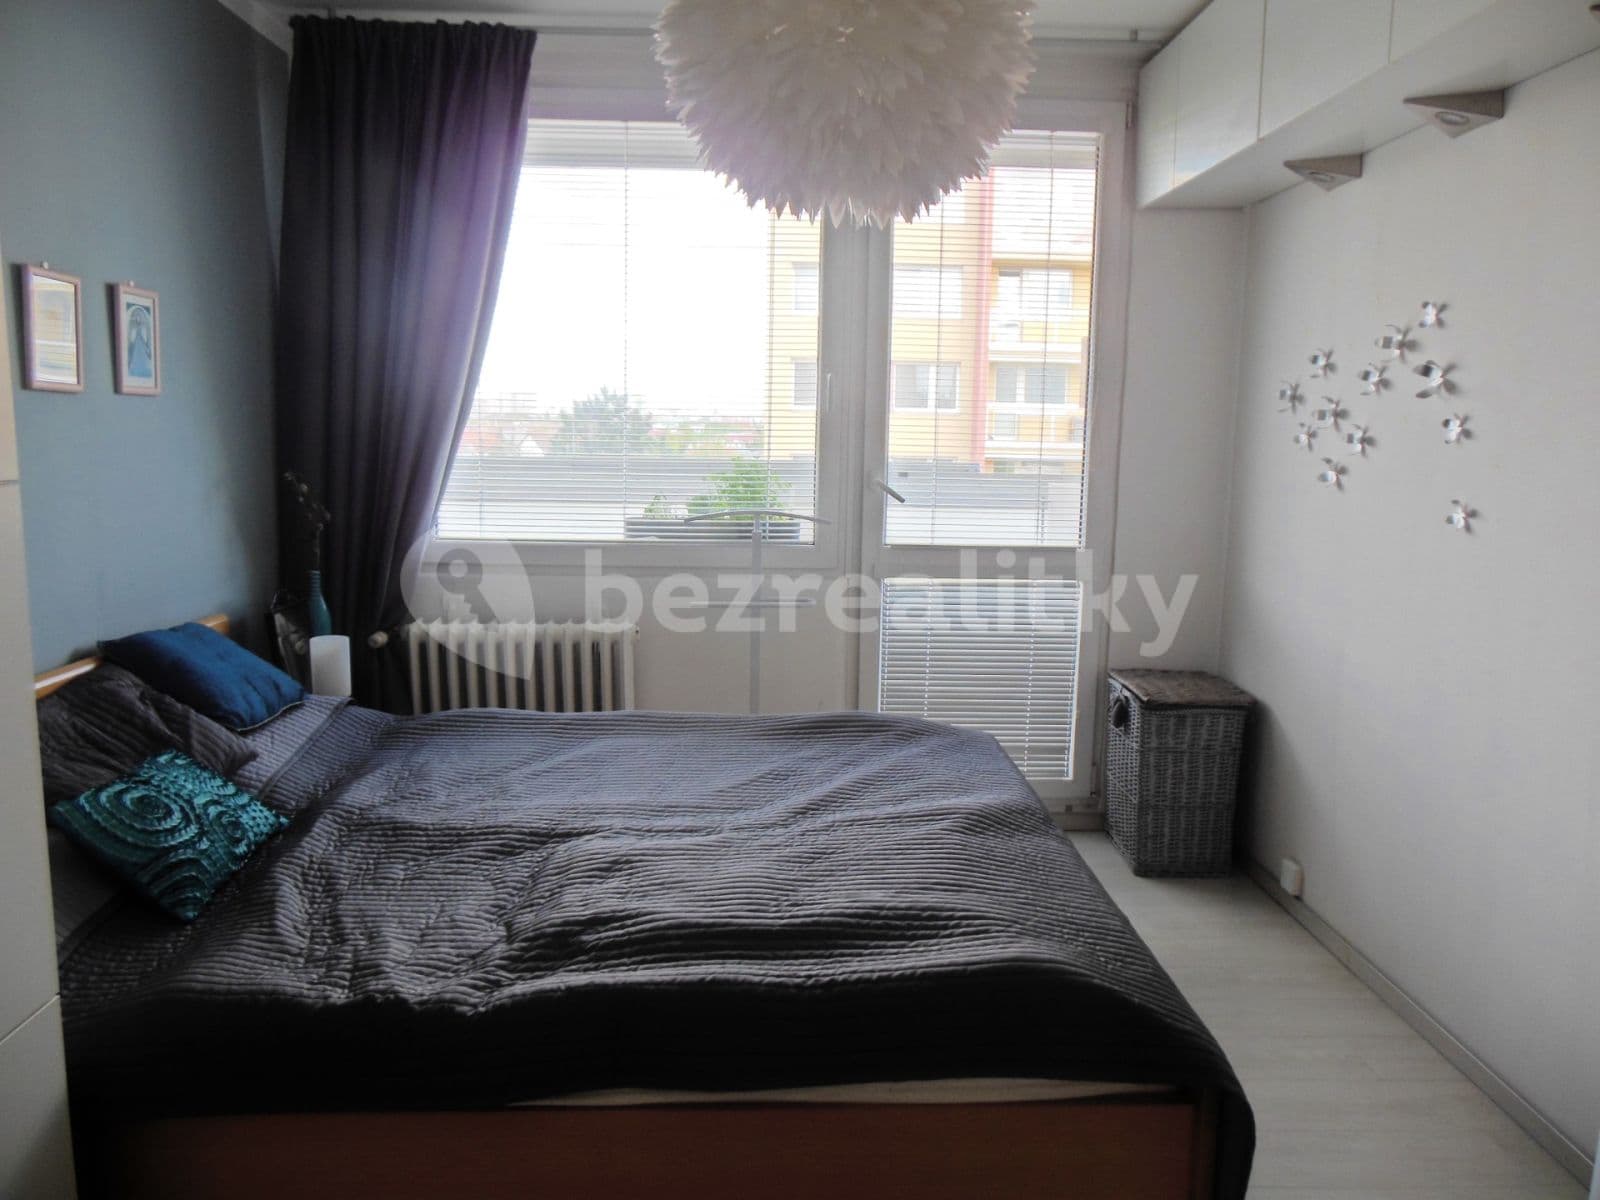 2 bedroom with open-plan kitchen flat for sale, 73 m², Písečná, Prague, Prague